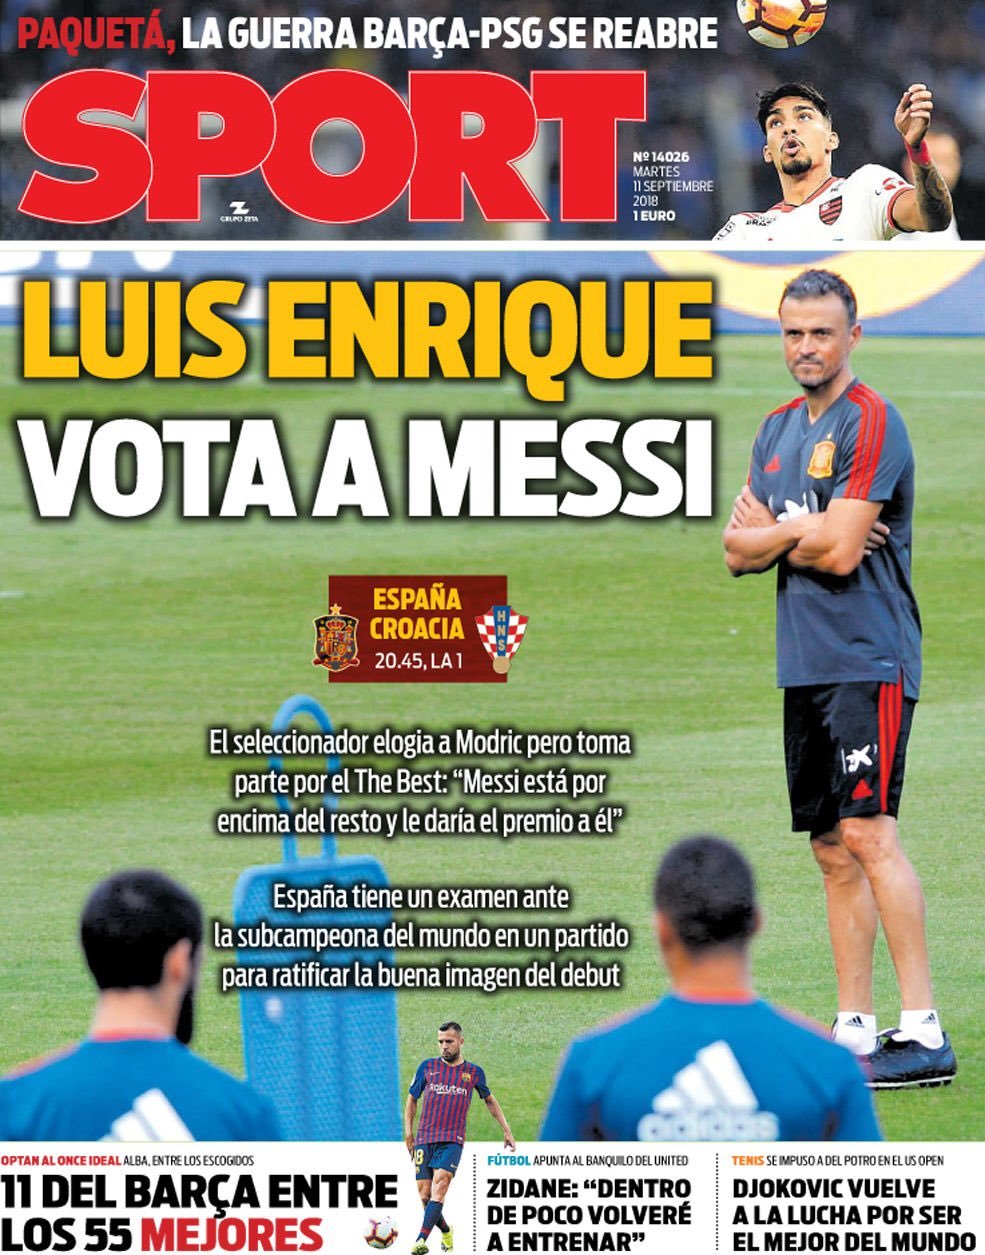 Luis Enrique votes for Messi